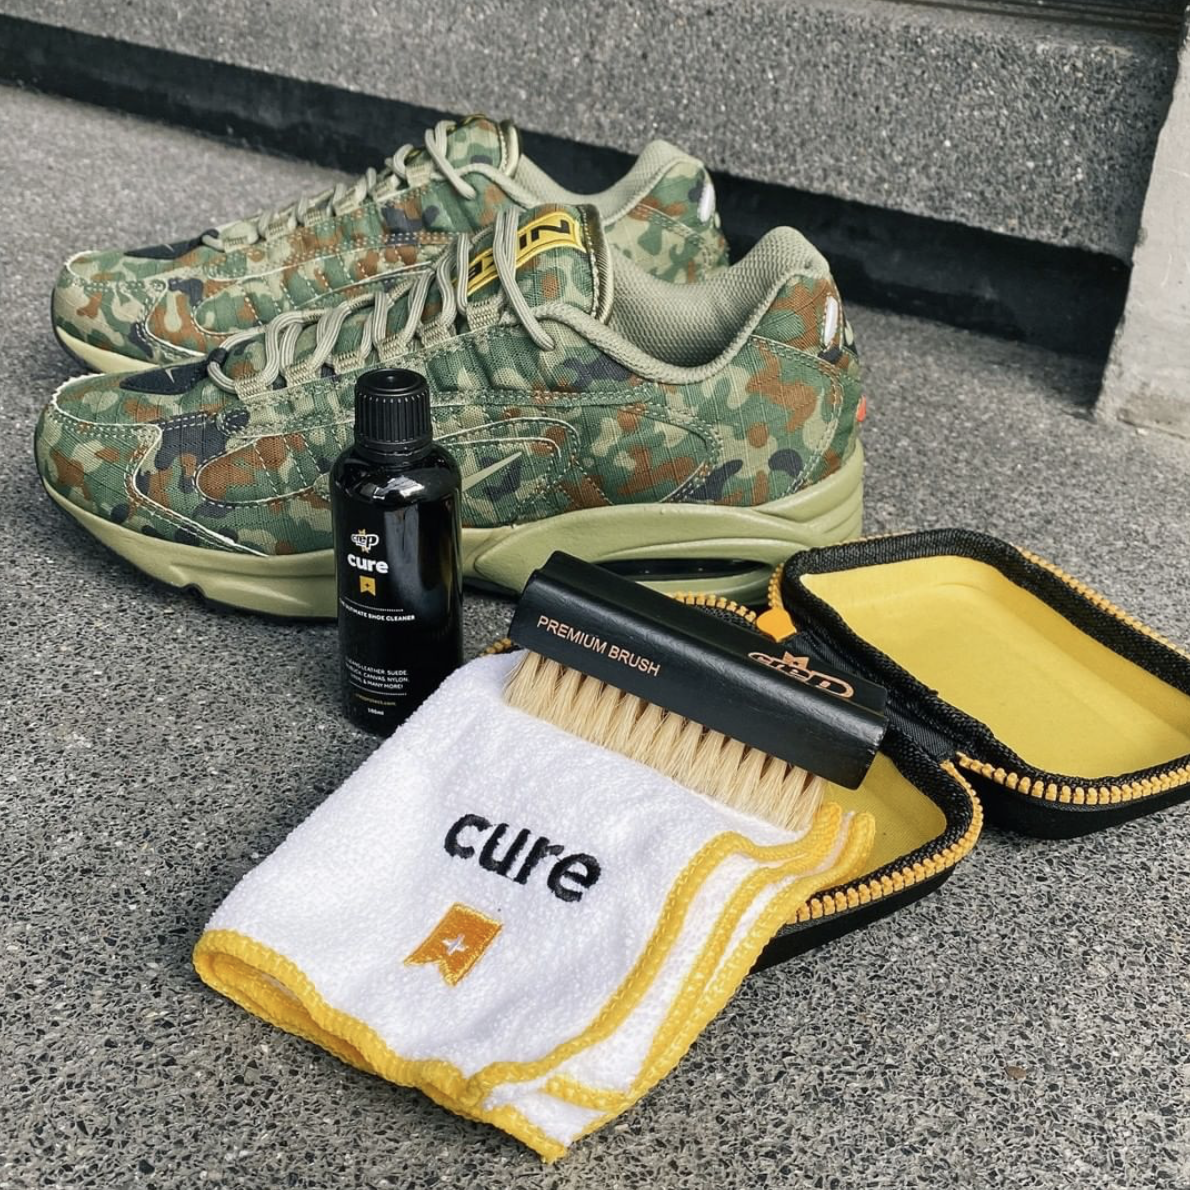 Bộ Vệ Sinh Giày Dép Crep Protect Cure Kit (gồm bàn chải, khăn lau, chai dung dịch vệ sinh 100ml và sách hướng dẫn)